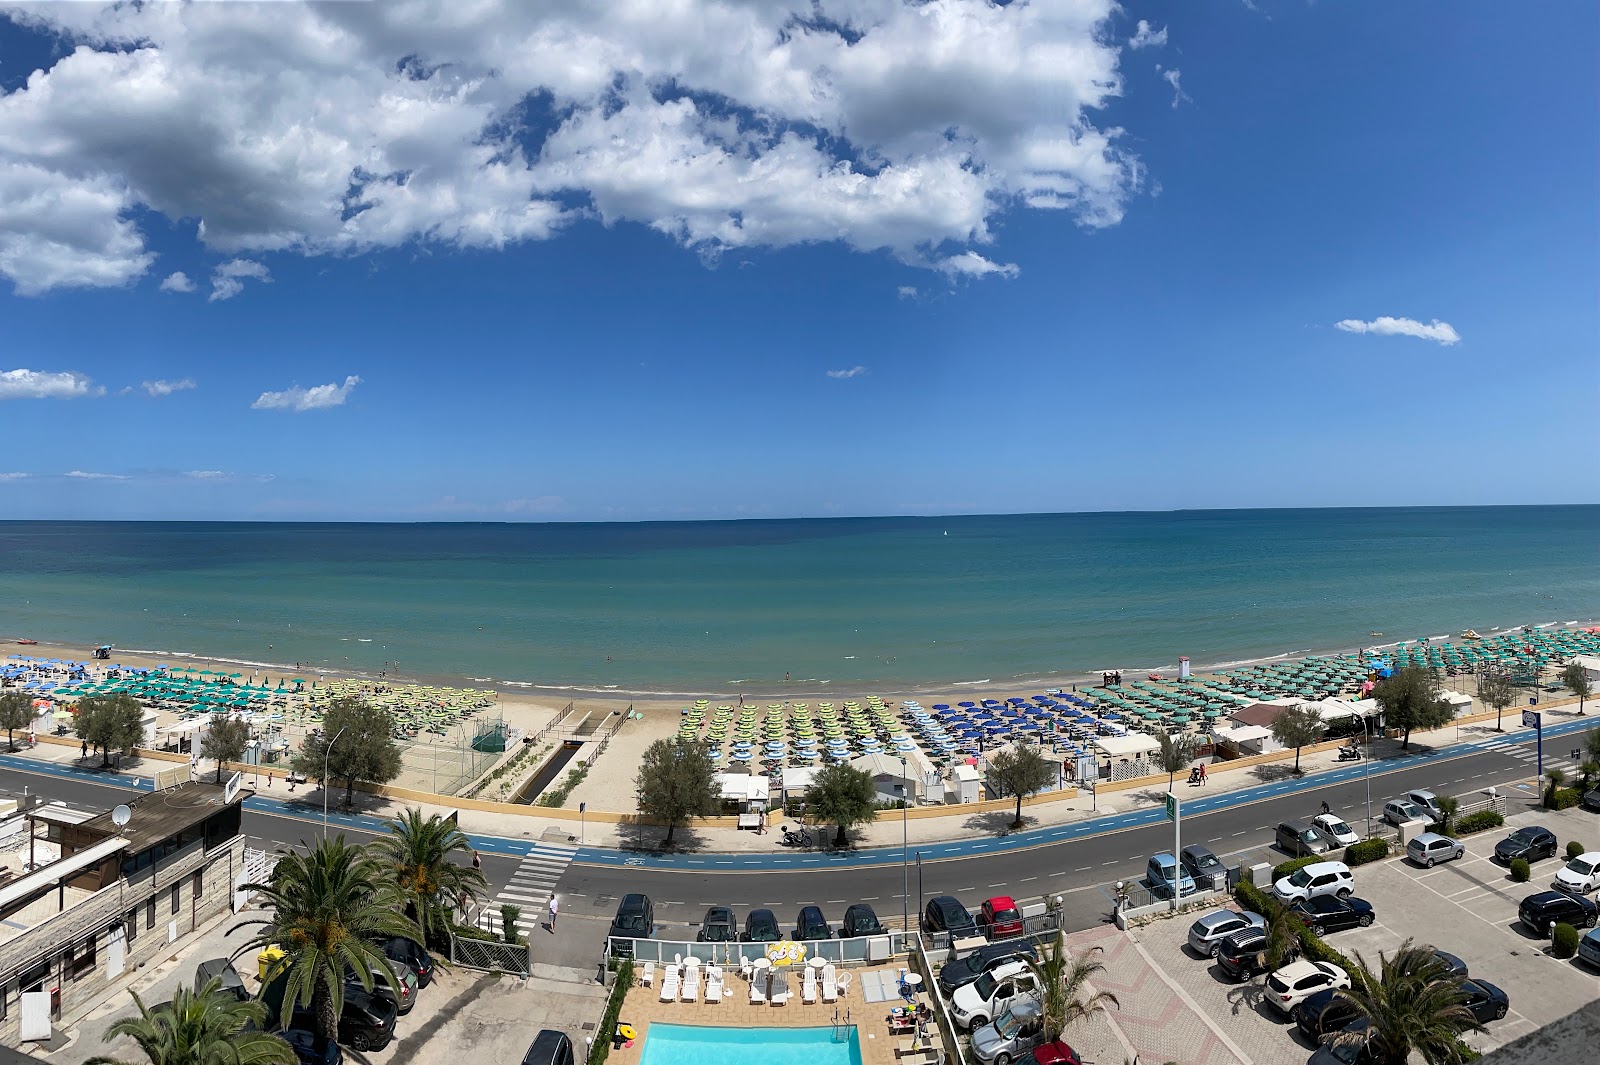 Spiaggia Senigallia'in fotoğrafı çok temiz temizlik seviyesi ile